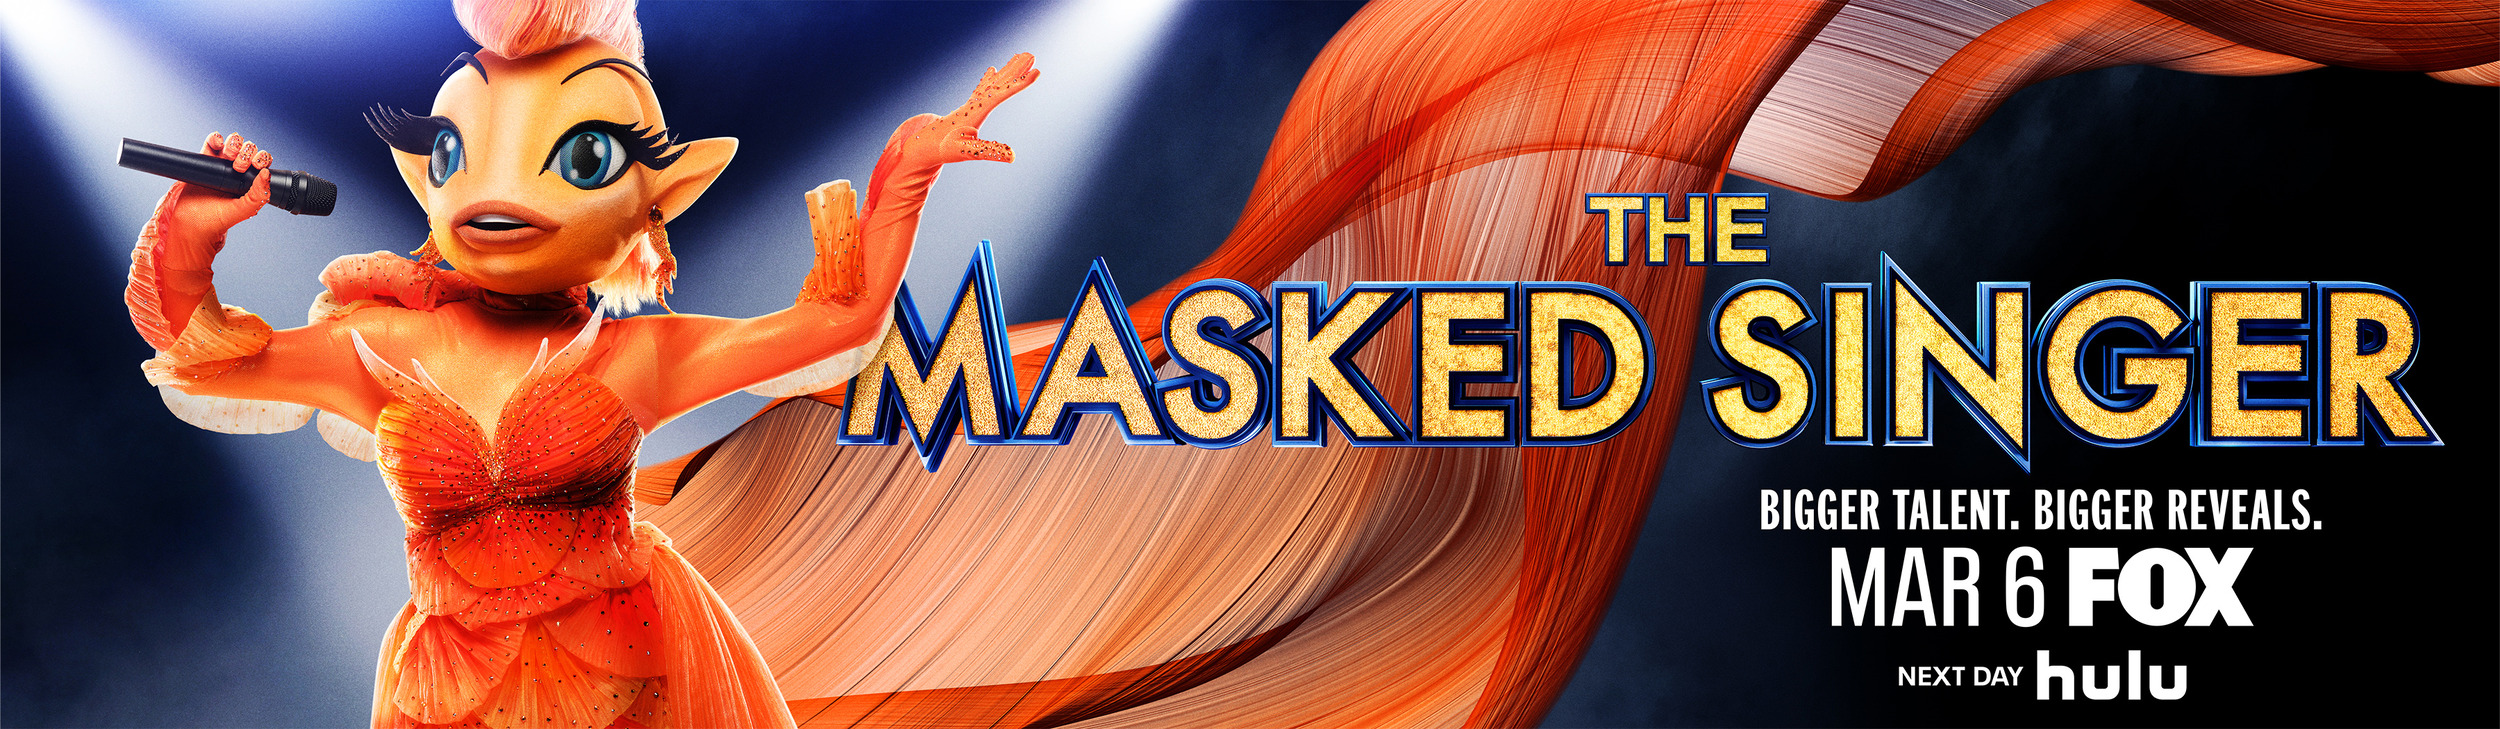 Mega Sized TV Poster Image for The Masked Singer (#17 of 17)